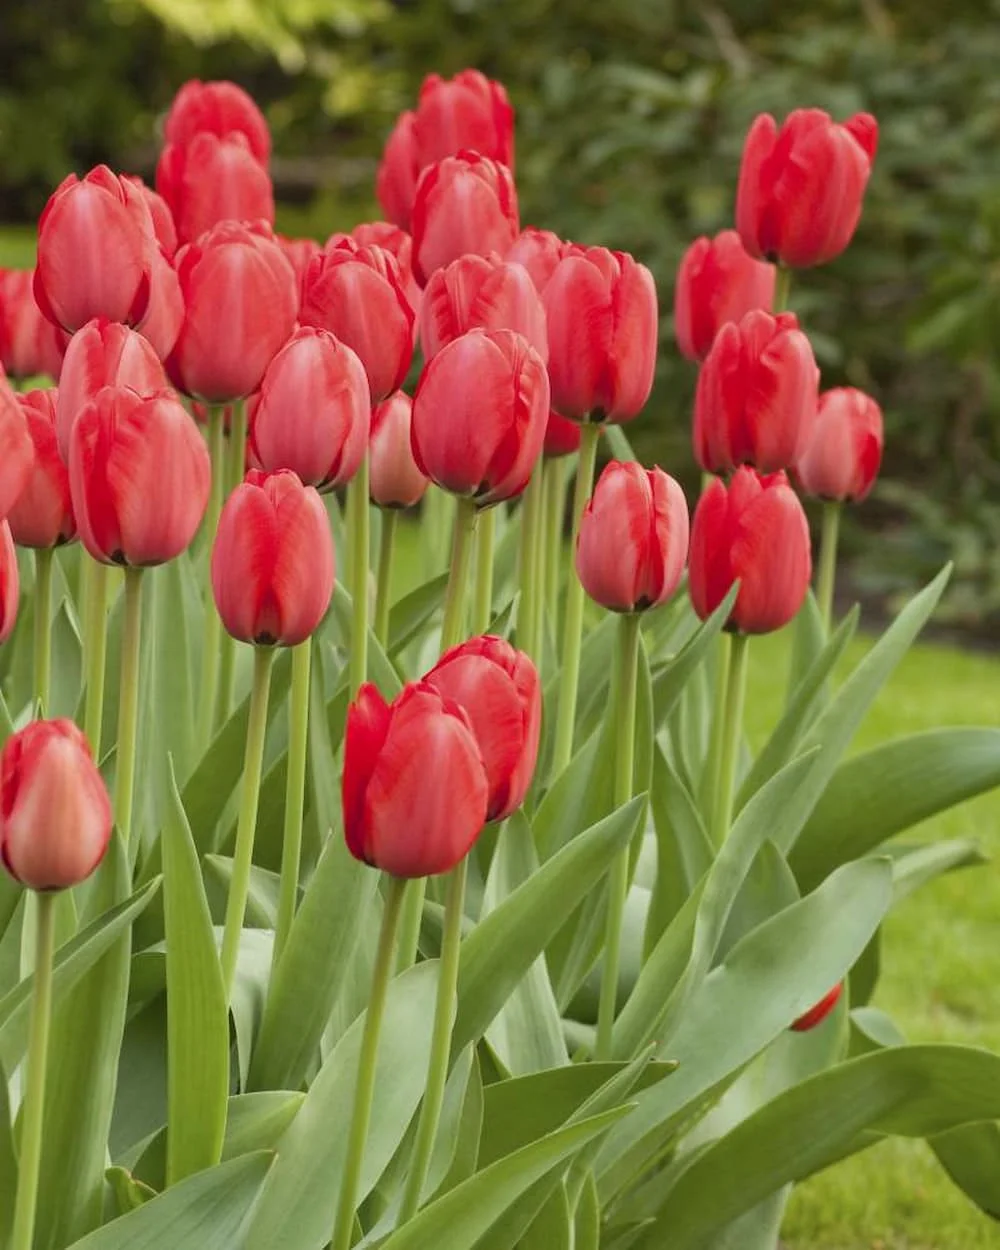 Hoa tulip đỏ là loài hoa phổ biến nhất